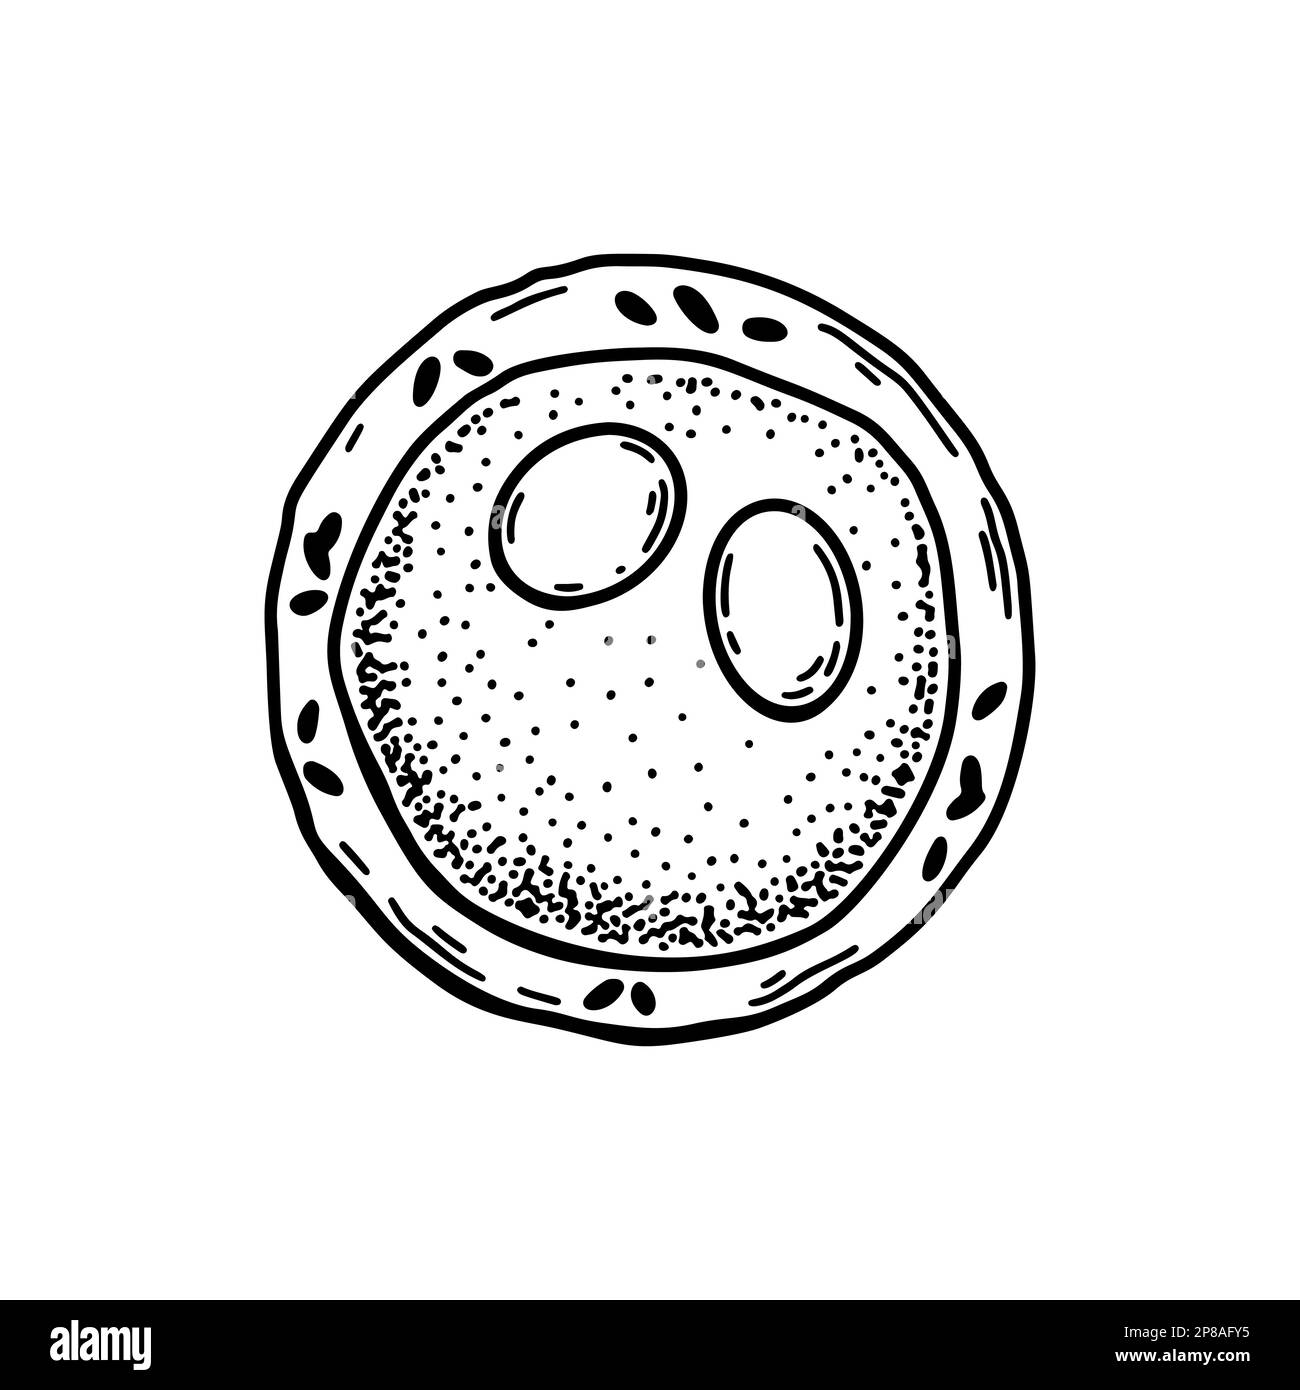 Myéloblaste isolé sur fond blanc. Illustration de vecteur de microbiologie scientifique dessiné à la main dans un style d'esquisse Illustration de Vecteur